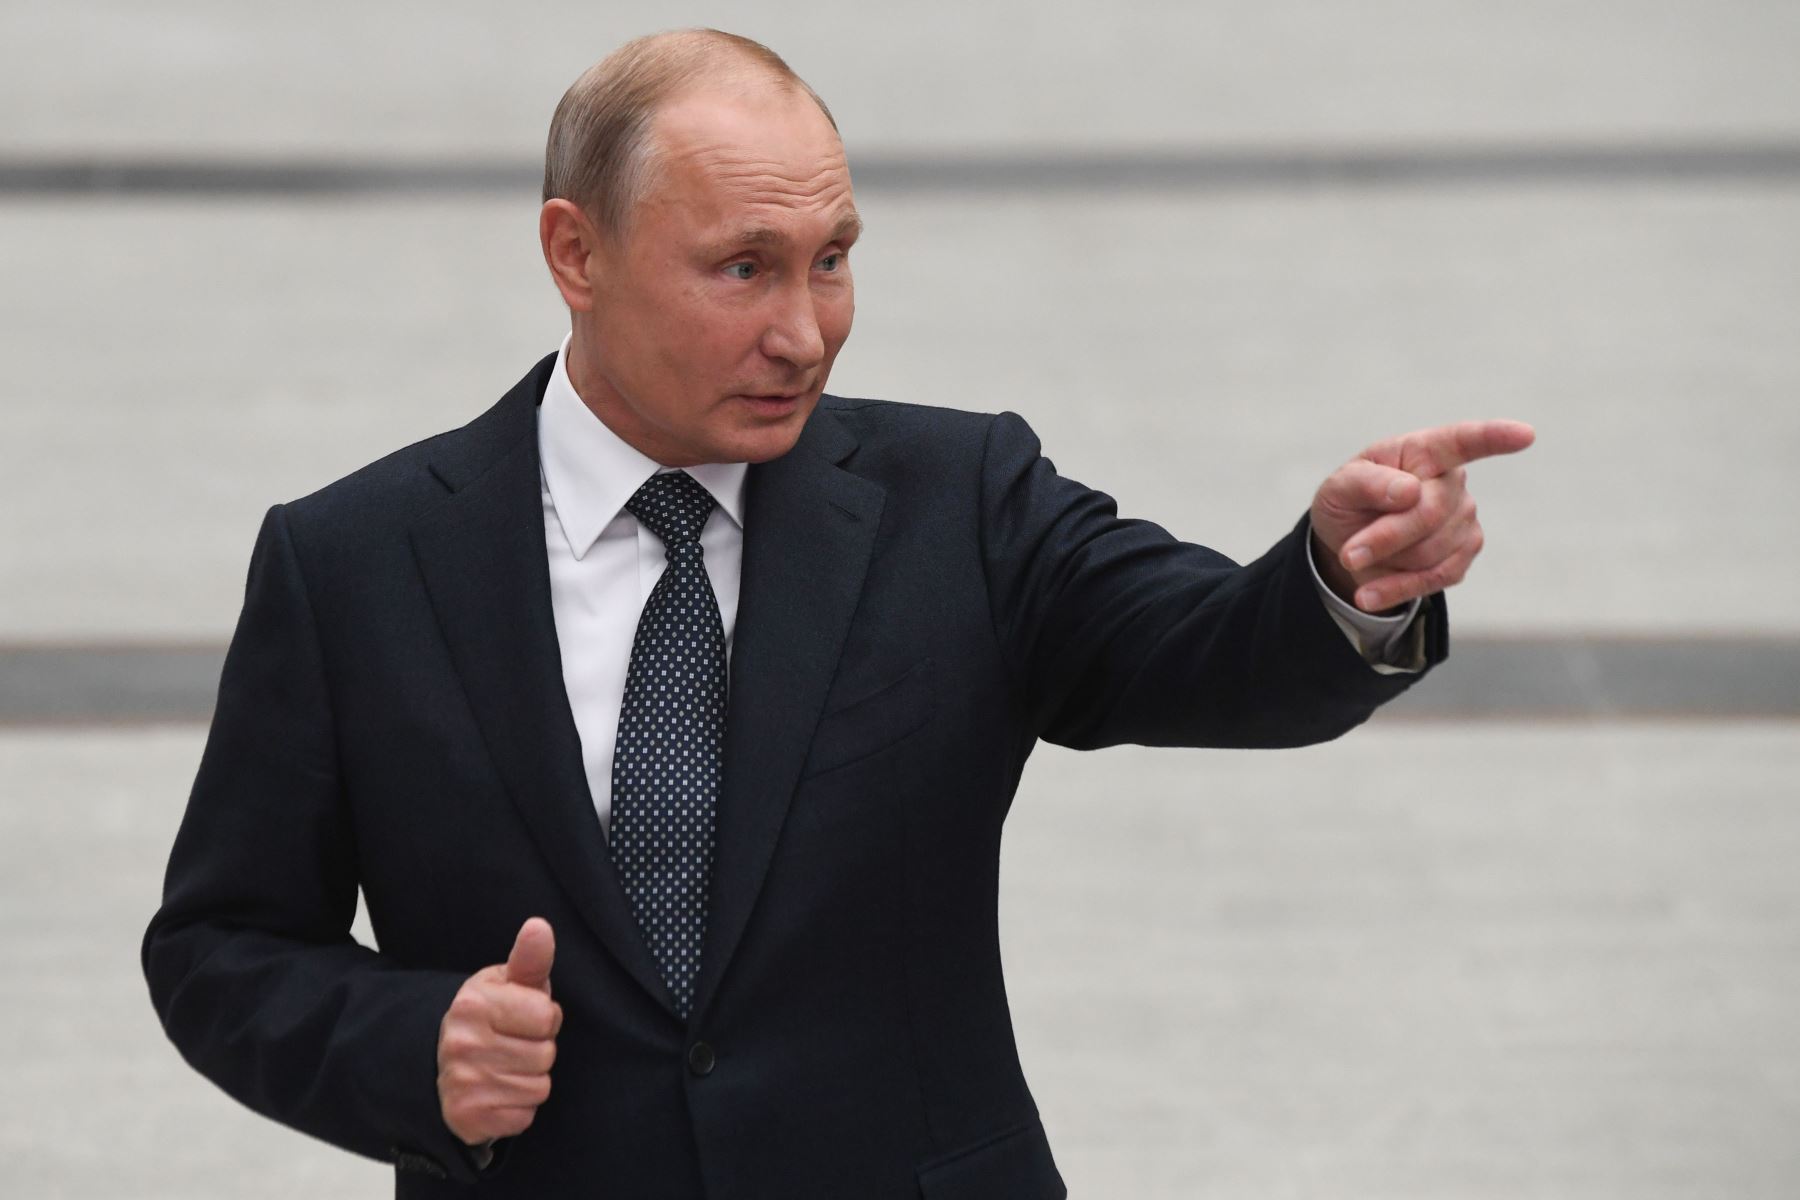 Putin a EE.UU.: “Han ignorado nuestras demandas contra Ucrania”